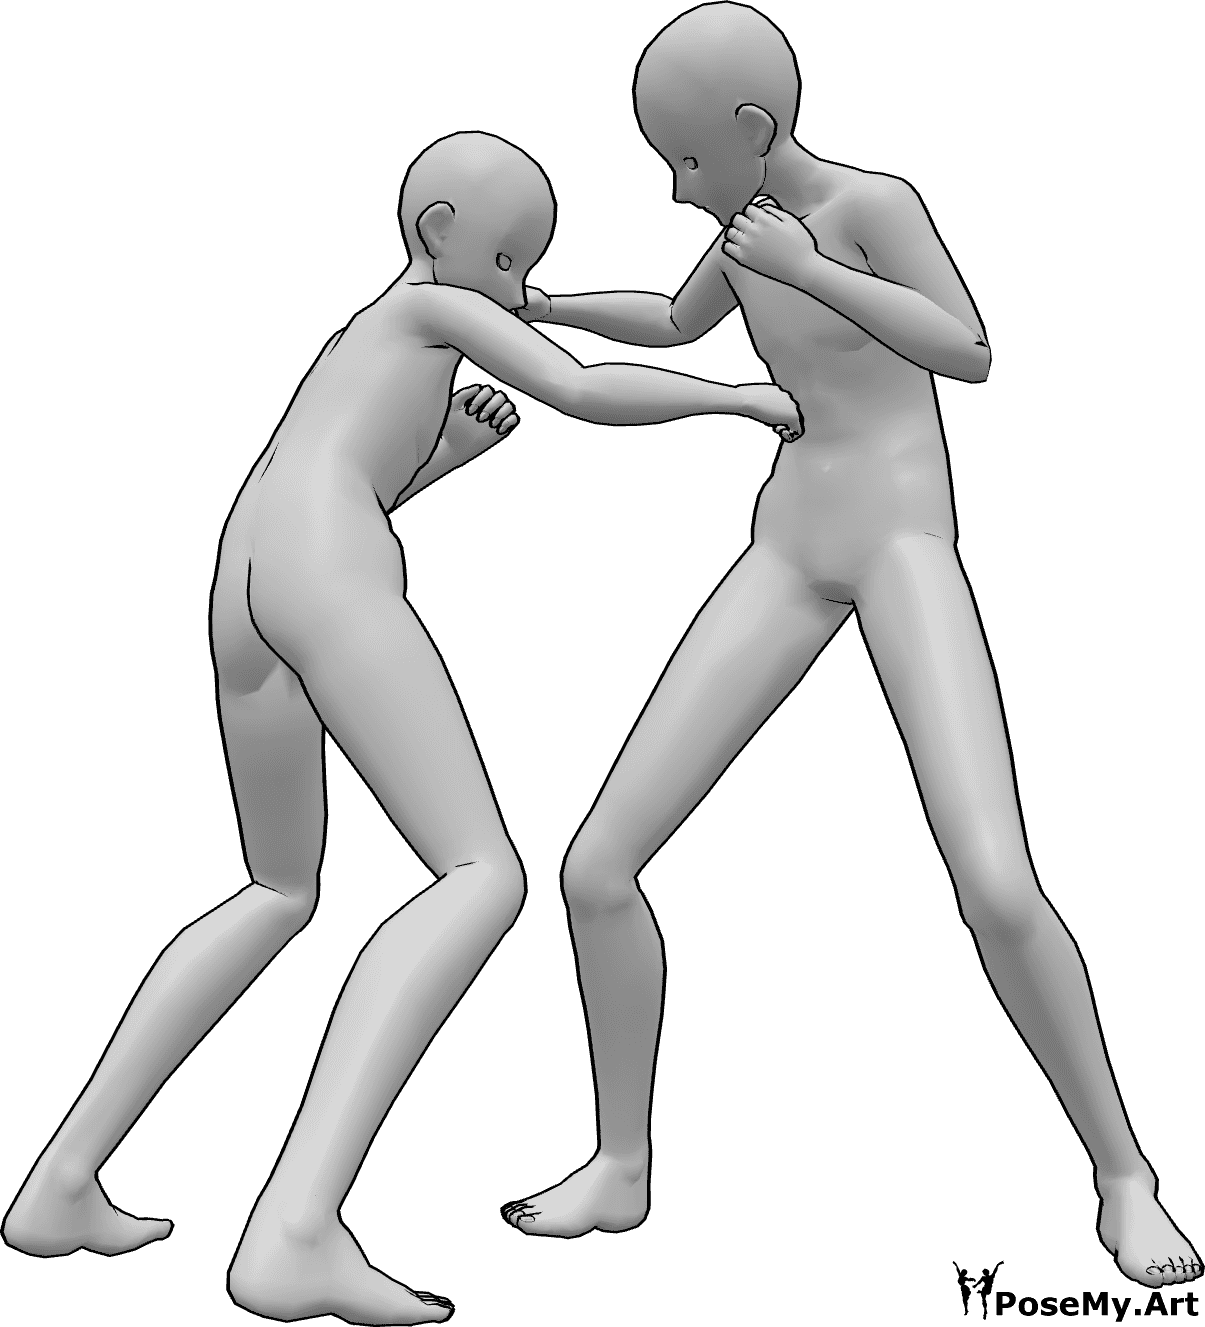 Riferimento alle pose- Anime maschi in posa di combattimento - Due maschi anime si picchiano, prendendosi a pugni in testa e nello stomaco